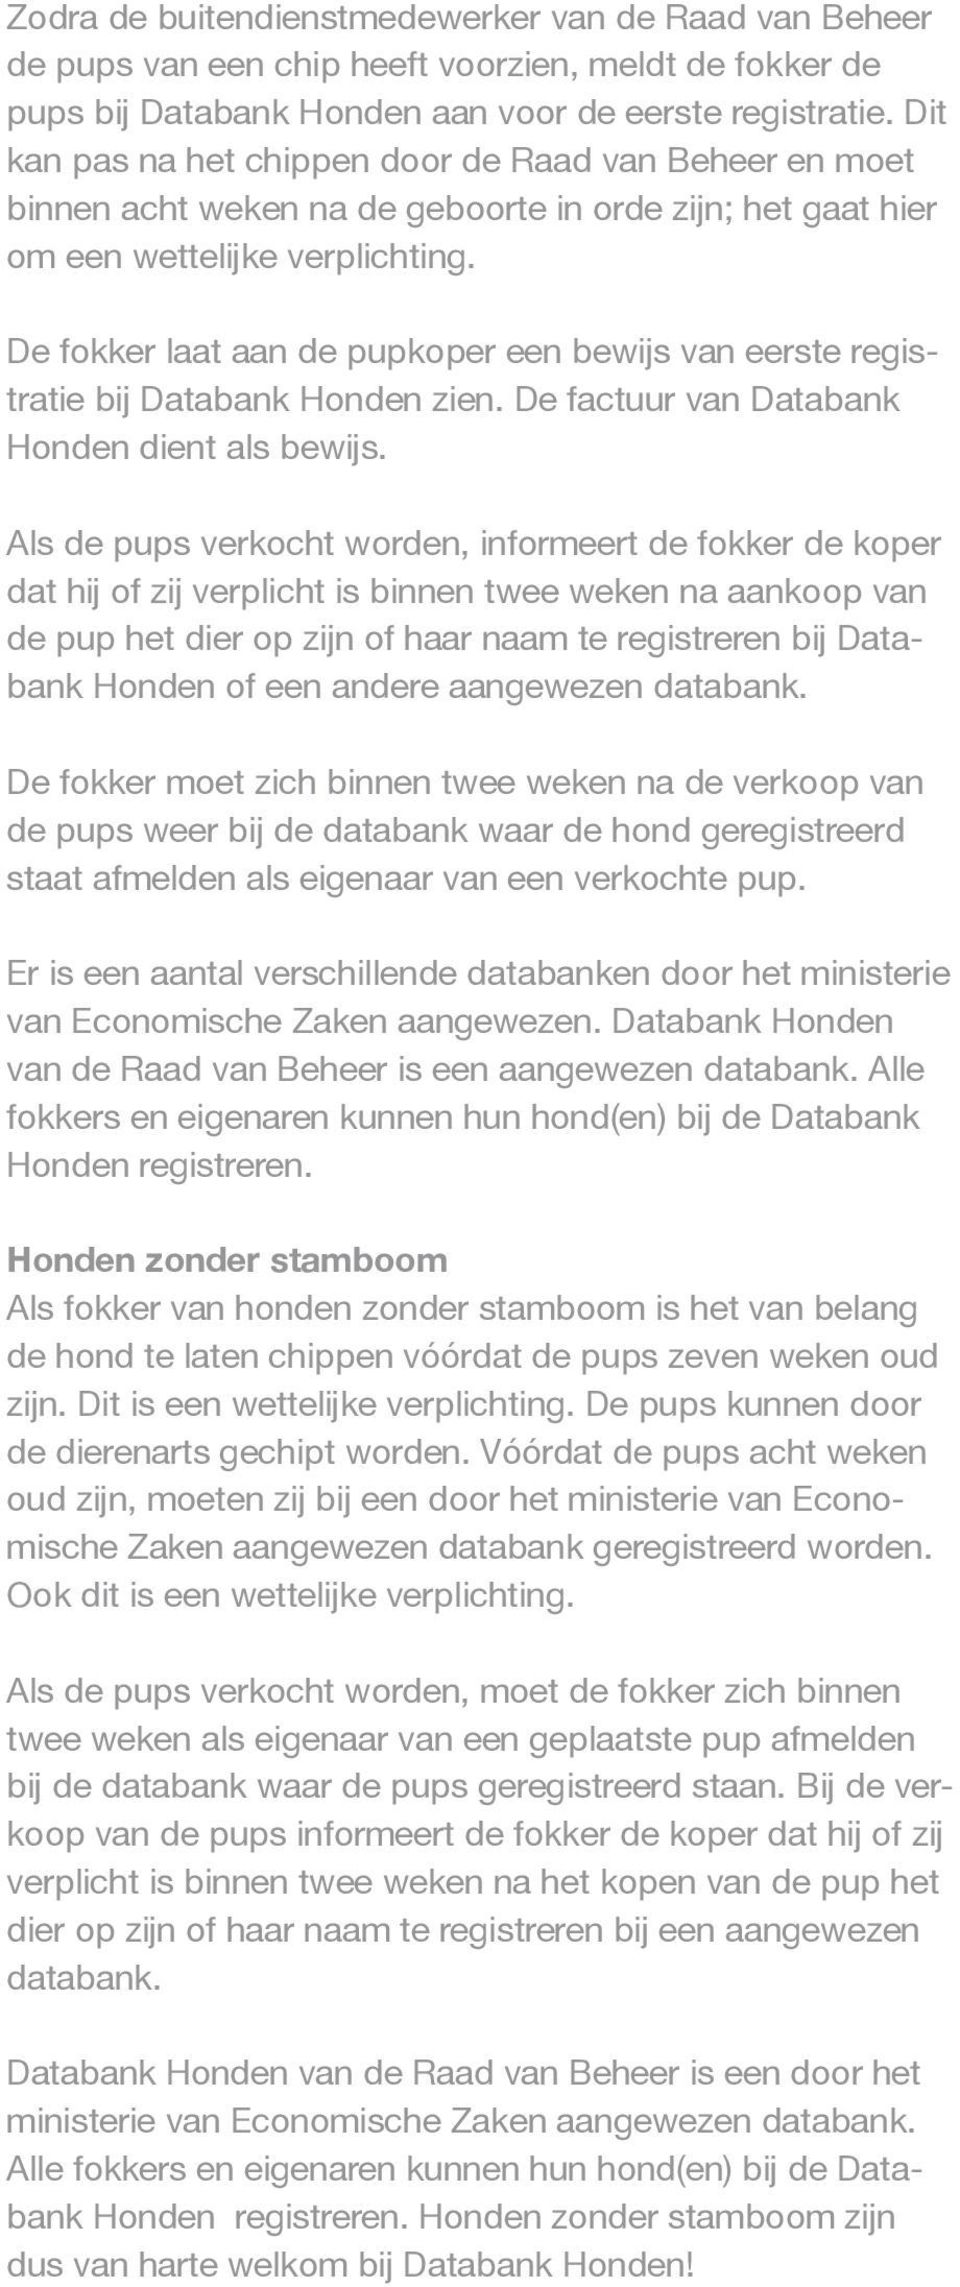 De fokker laat aan de pupkoper een bewijs van eerste registratie bij Databank Honden zien. De factuur van Databank Honden dient als bewijs.